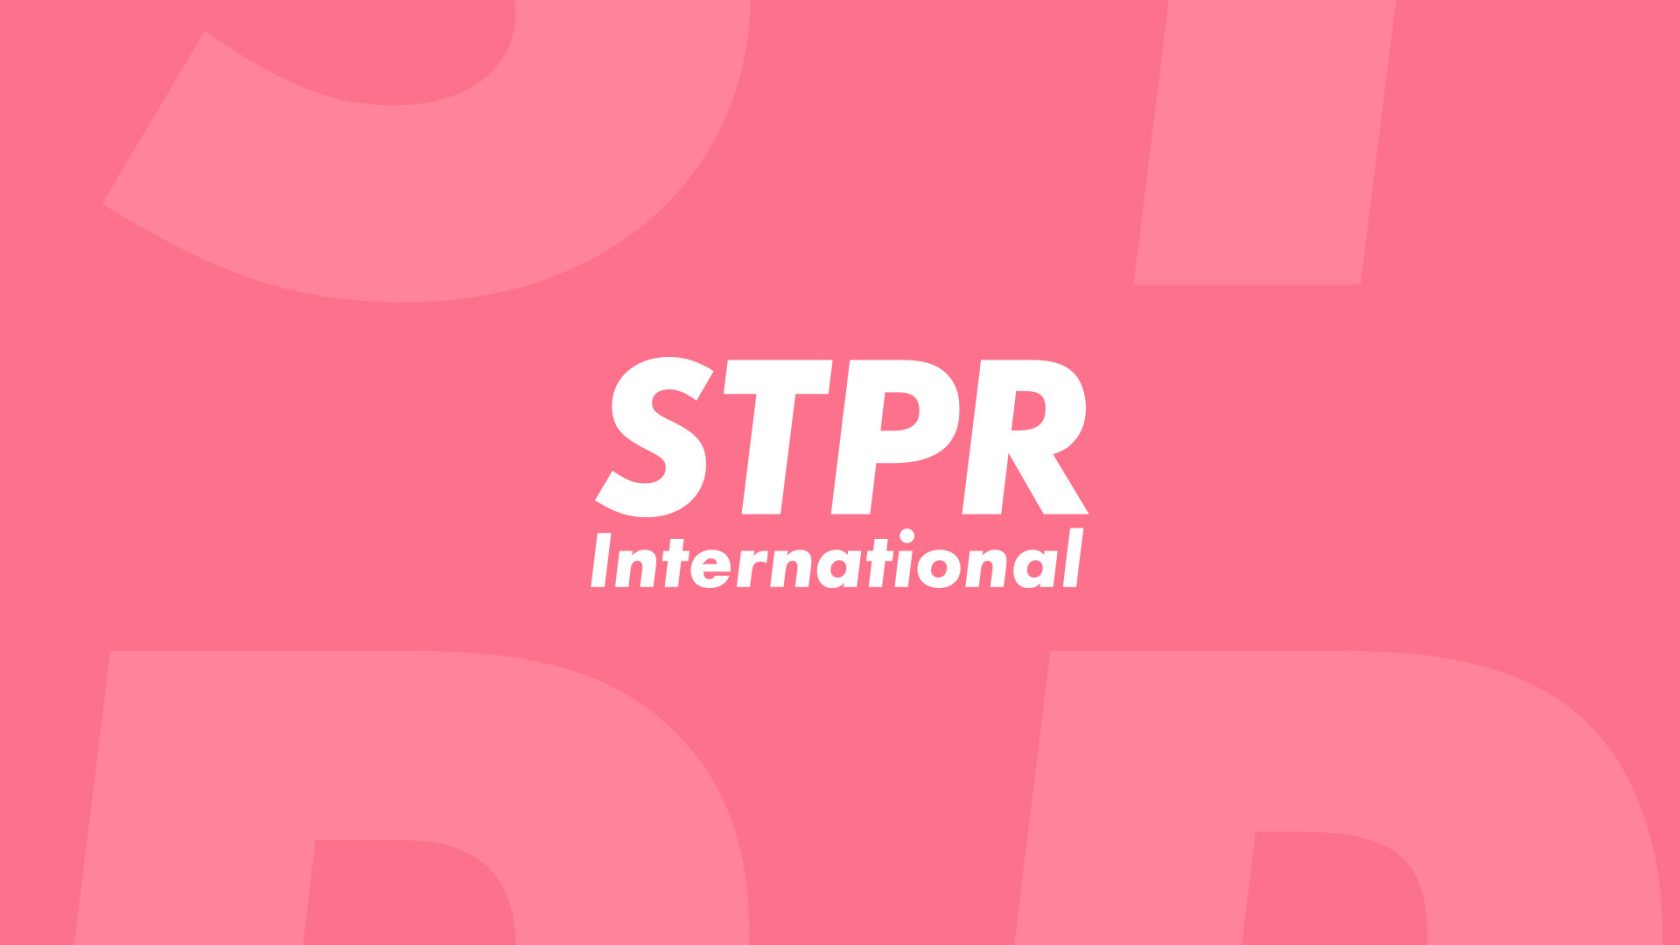 STPRが設立したシンガポール法人STPR international Pte.Ltd.のロゴマーク(by提供写真)